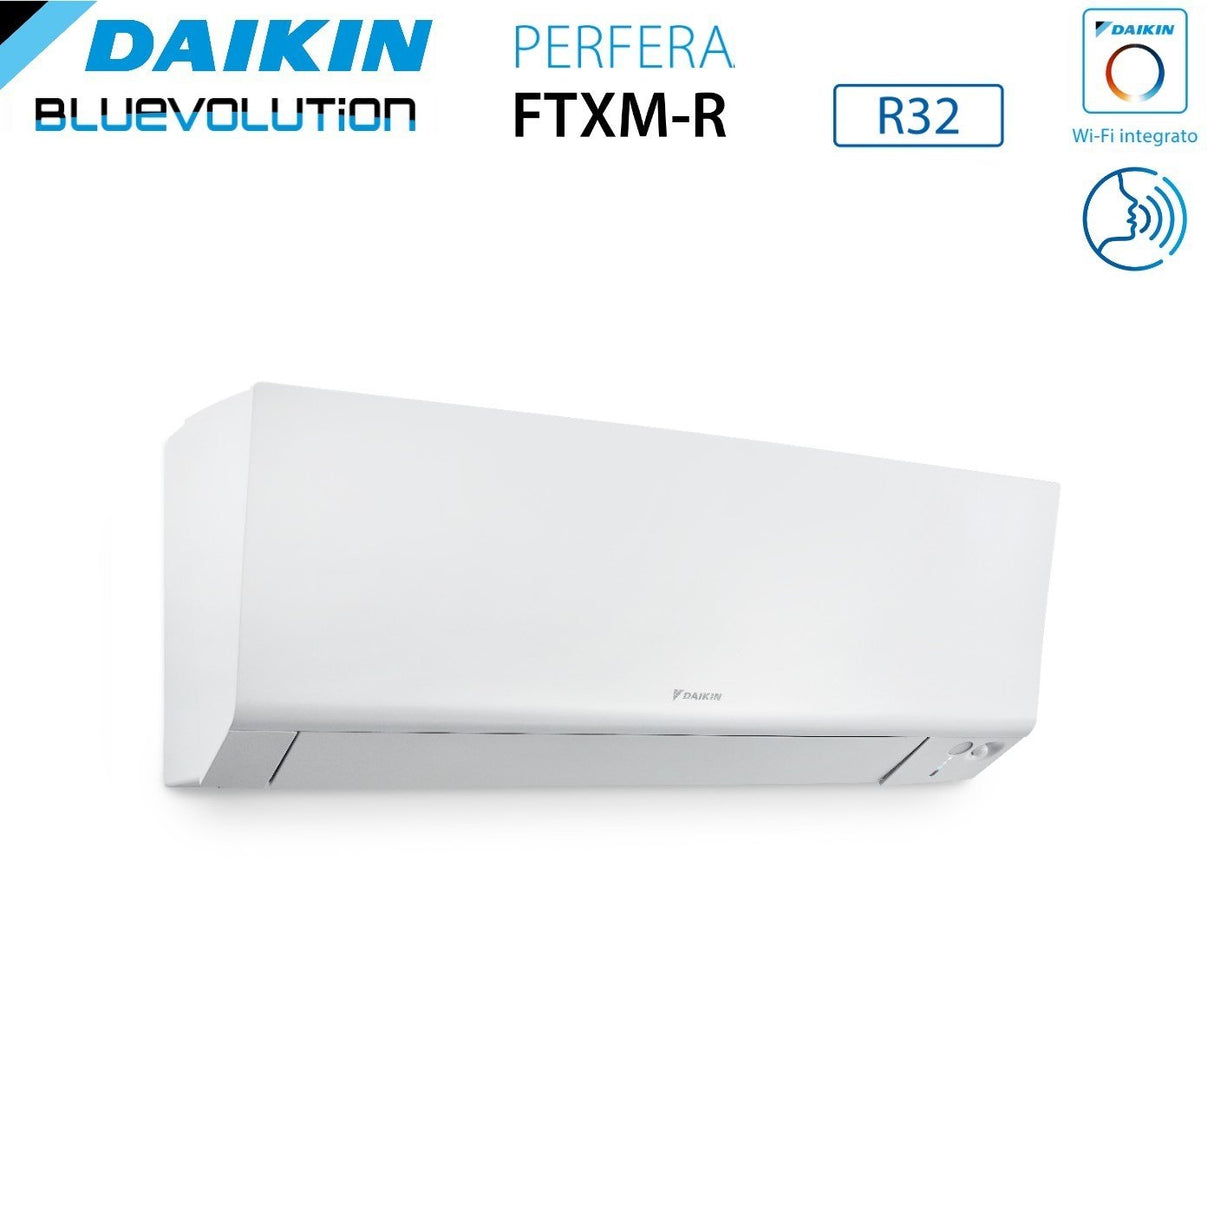 immagine-4-daikin-climatizzatore-condizionatore-daikin-bluevolution-quadri-split-inverter-serie-ftxmr-perfera-wall-7999-con-4mxm80a-r-32-wi-fi-integrato-7000900090009000-garanzia-italiana